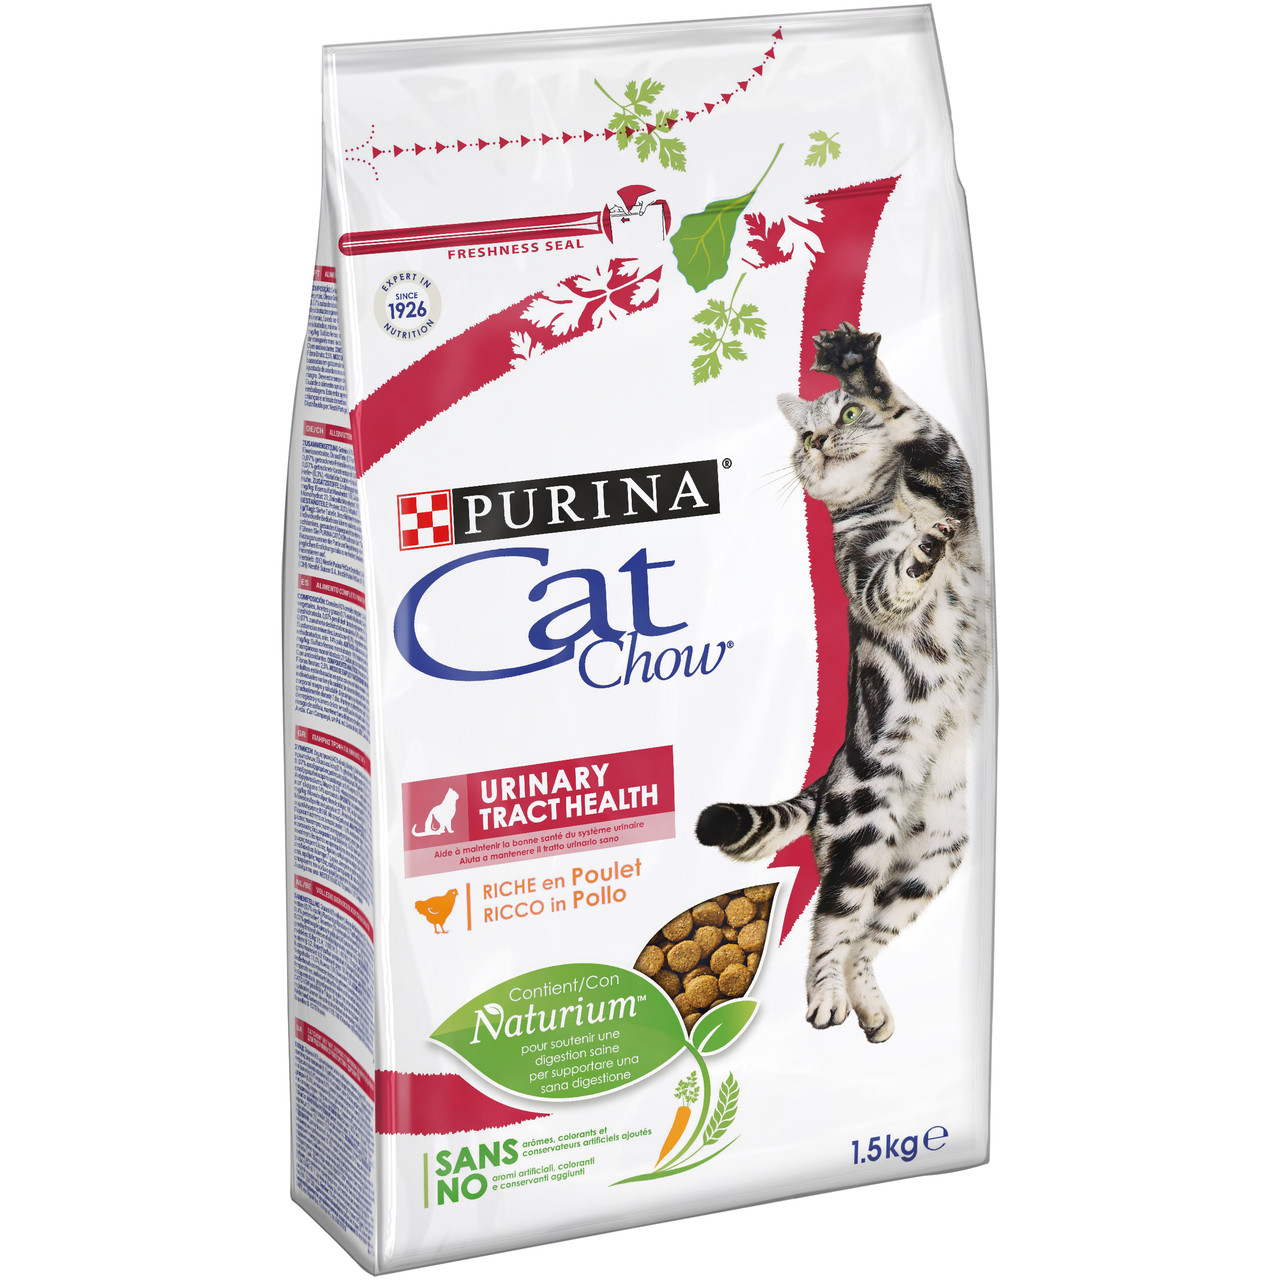 Cat Chow UrInary Tract Health - Сухий корм Кет Чау для профілактики захворювань сечовидільної системи (1.5 кг)